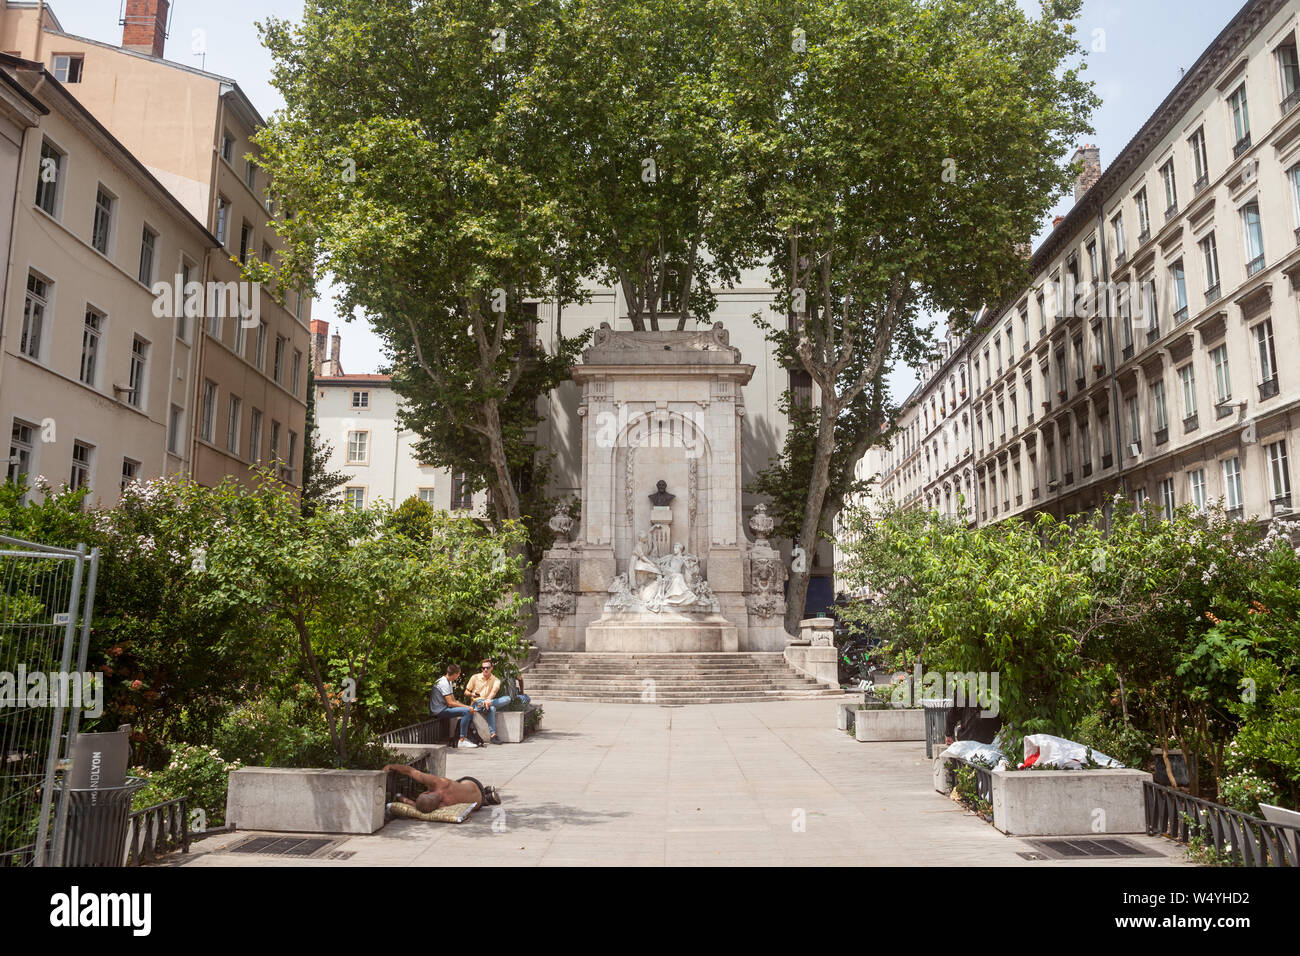 Lione, Francia - Luglio 18, 2019: Luogo gailleton quadrato con il suo monumento e fontana nel centro storico di Lione (Vieux Lyon), sul quartiere Presqu'ile. gailleto Foto Stock